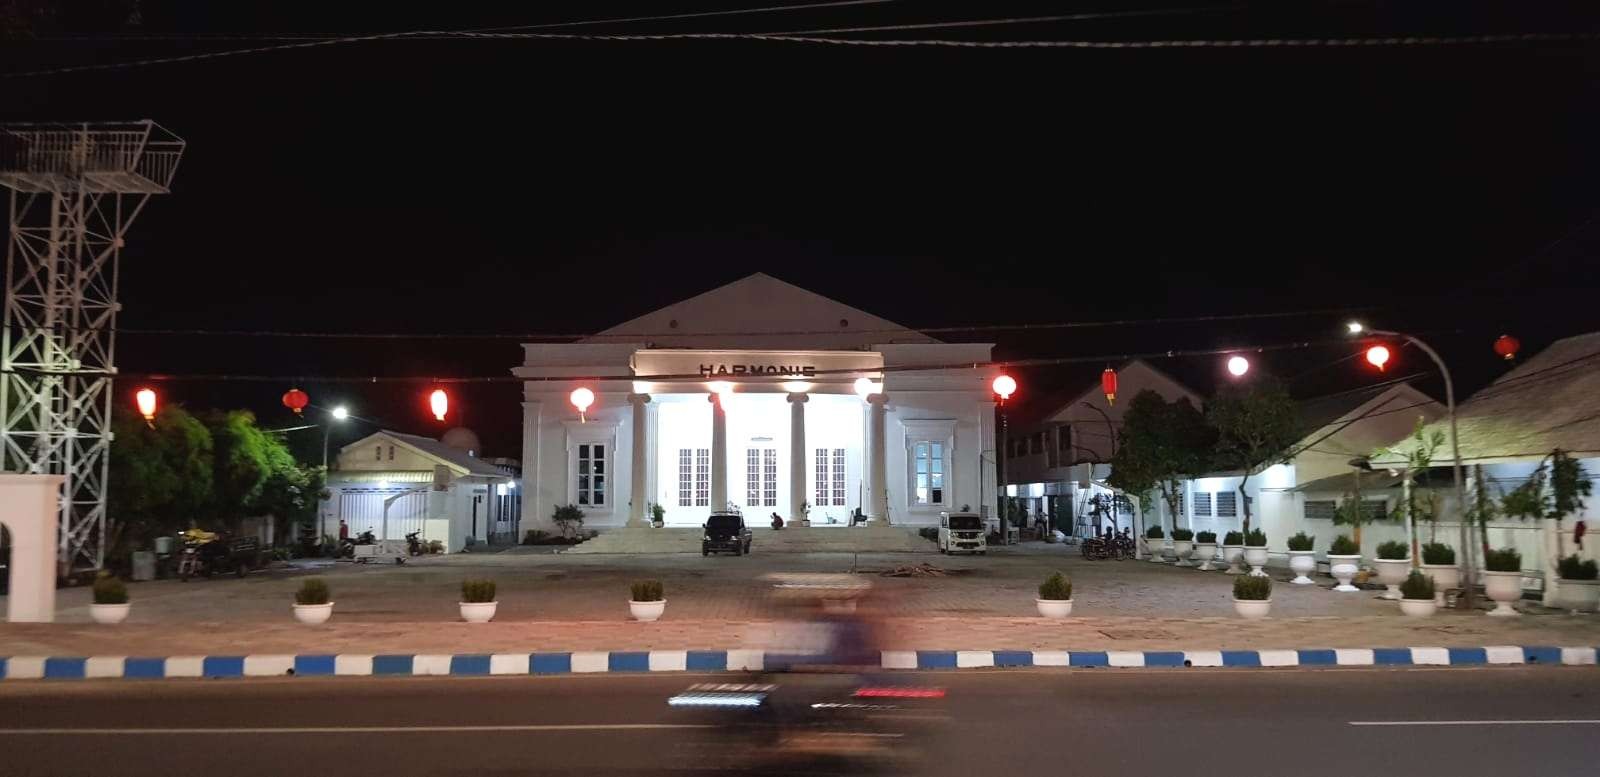 Wajah baru Gedung Harmonie Kota Pasuruan di malam hari. (Foto: Istimewa)